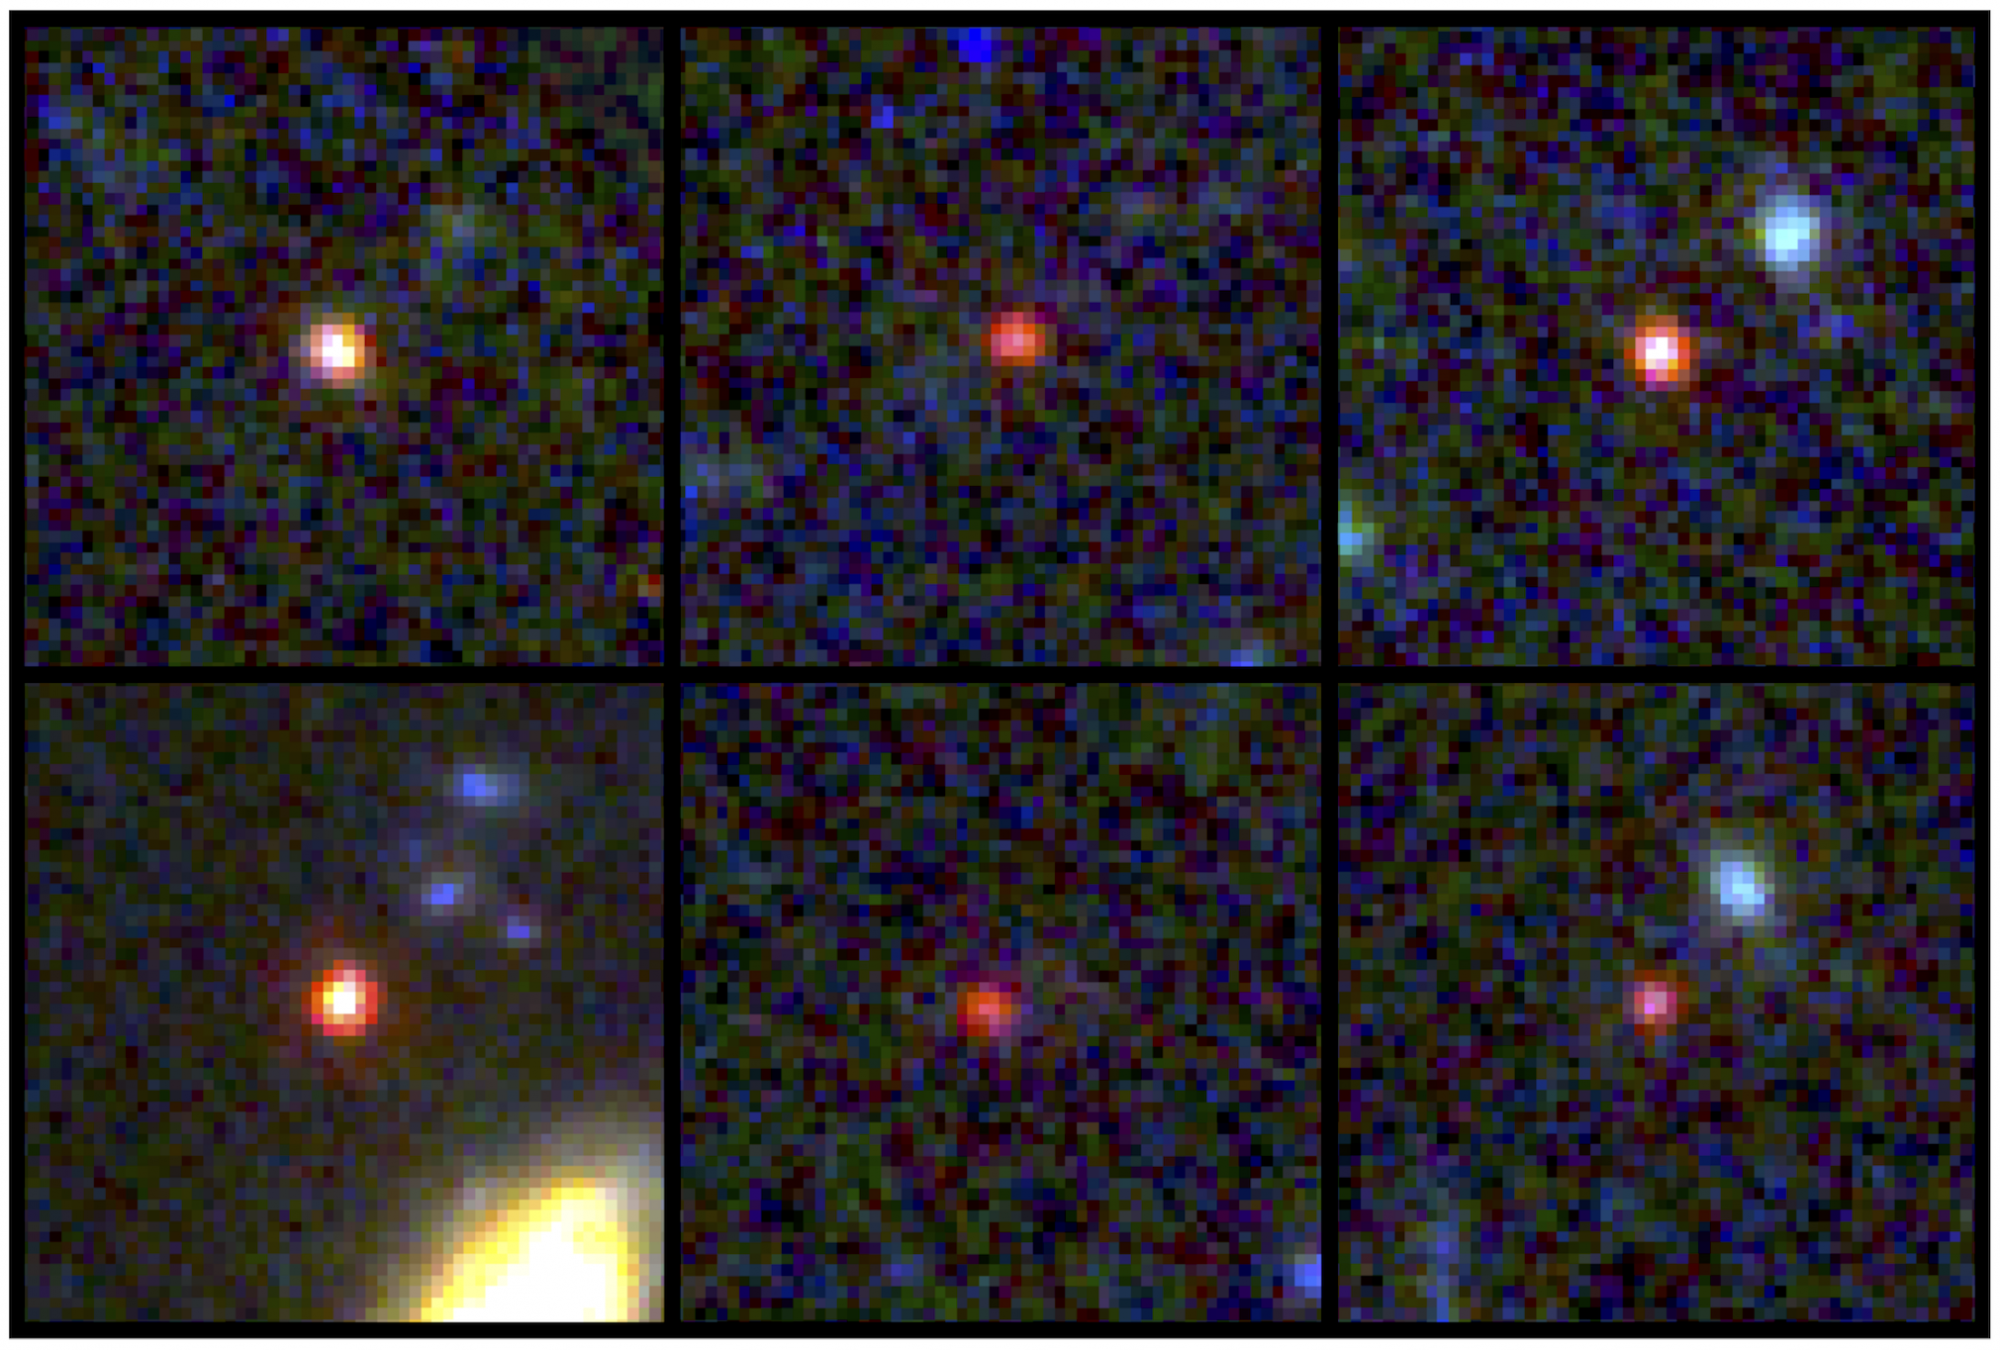 A hat, több mint 13 milliárd éves galaxis-jelölt a James Webb űrtávcső NIRCam detektorának közeli infravörös felvételein